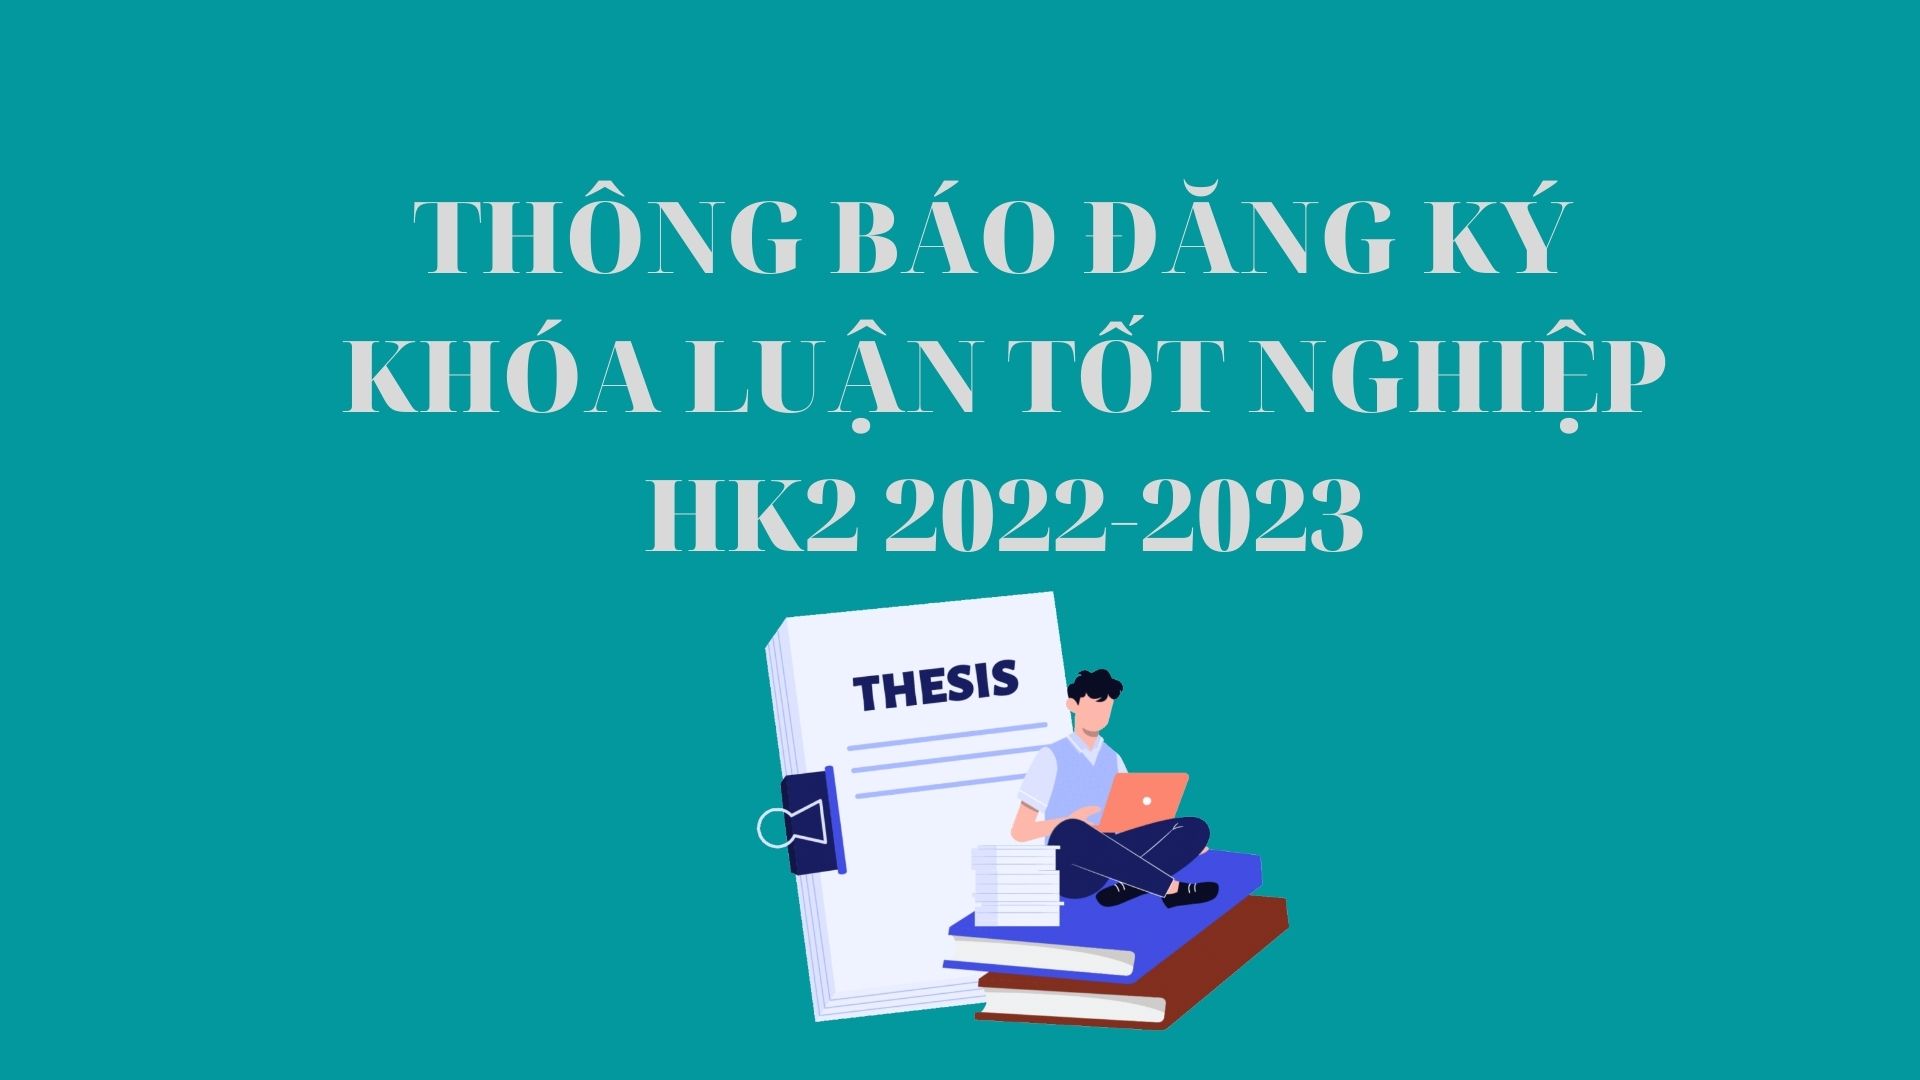 THÔNG BÁO ĐĂNG KÝ KHÓA LUẬN TỐT NGHIỆP HK2 2022-2023